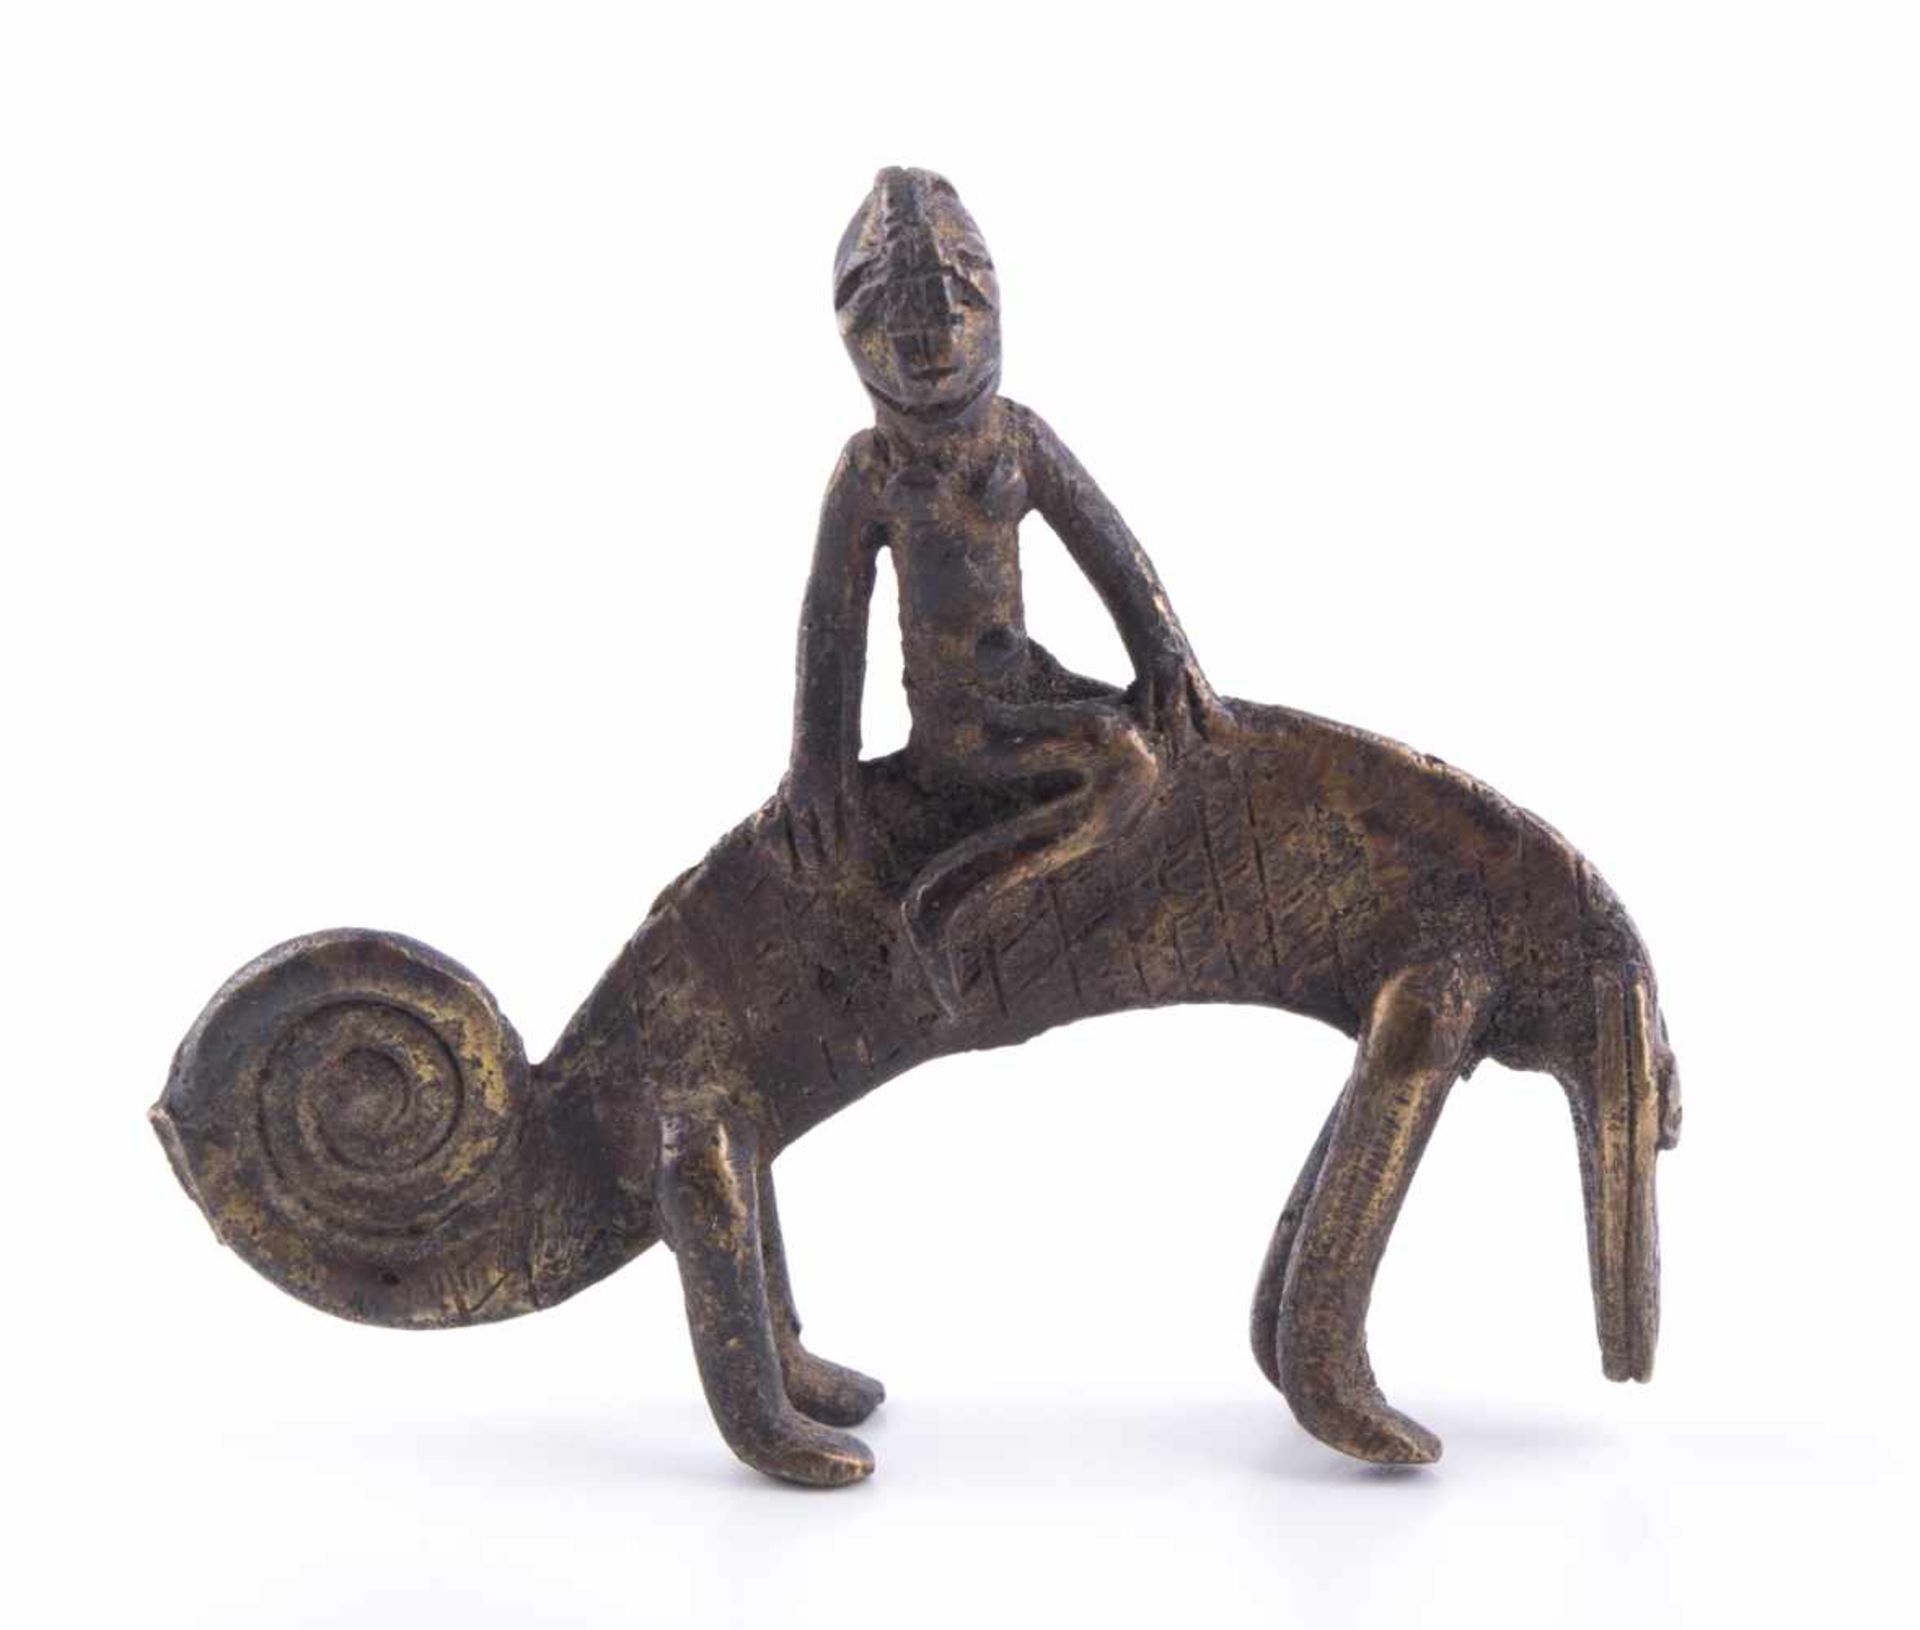 Ashanti Figur Afrika um 1900 / Ashanti figure, Africa about 1900 Goldgewicht, Bronze, 62 mm x 72 mm,